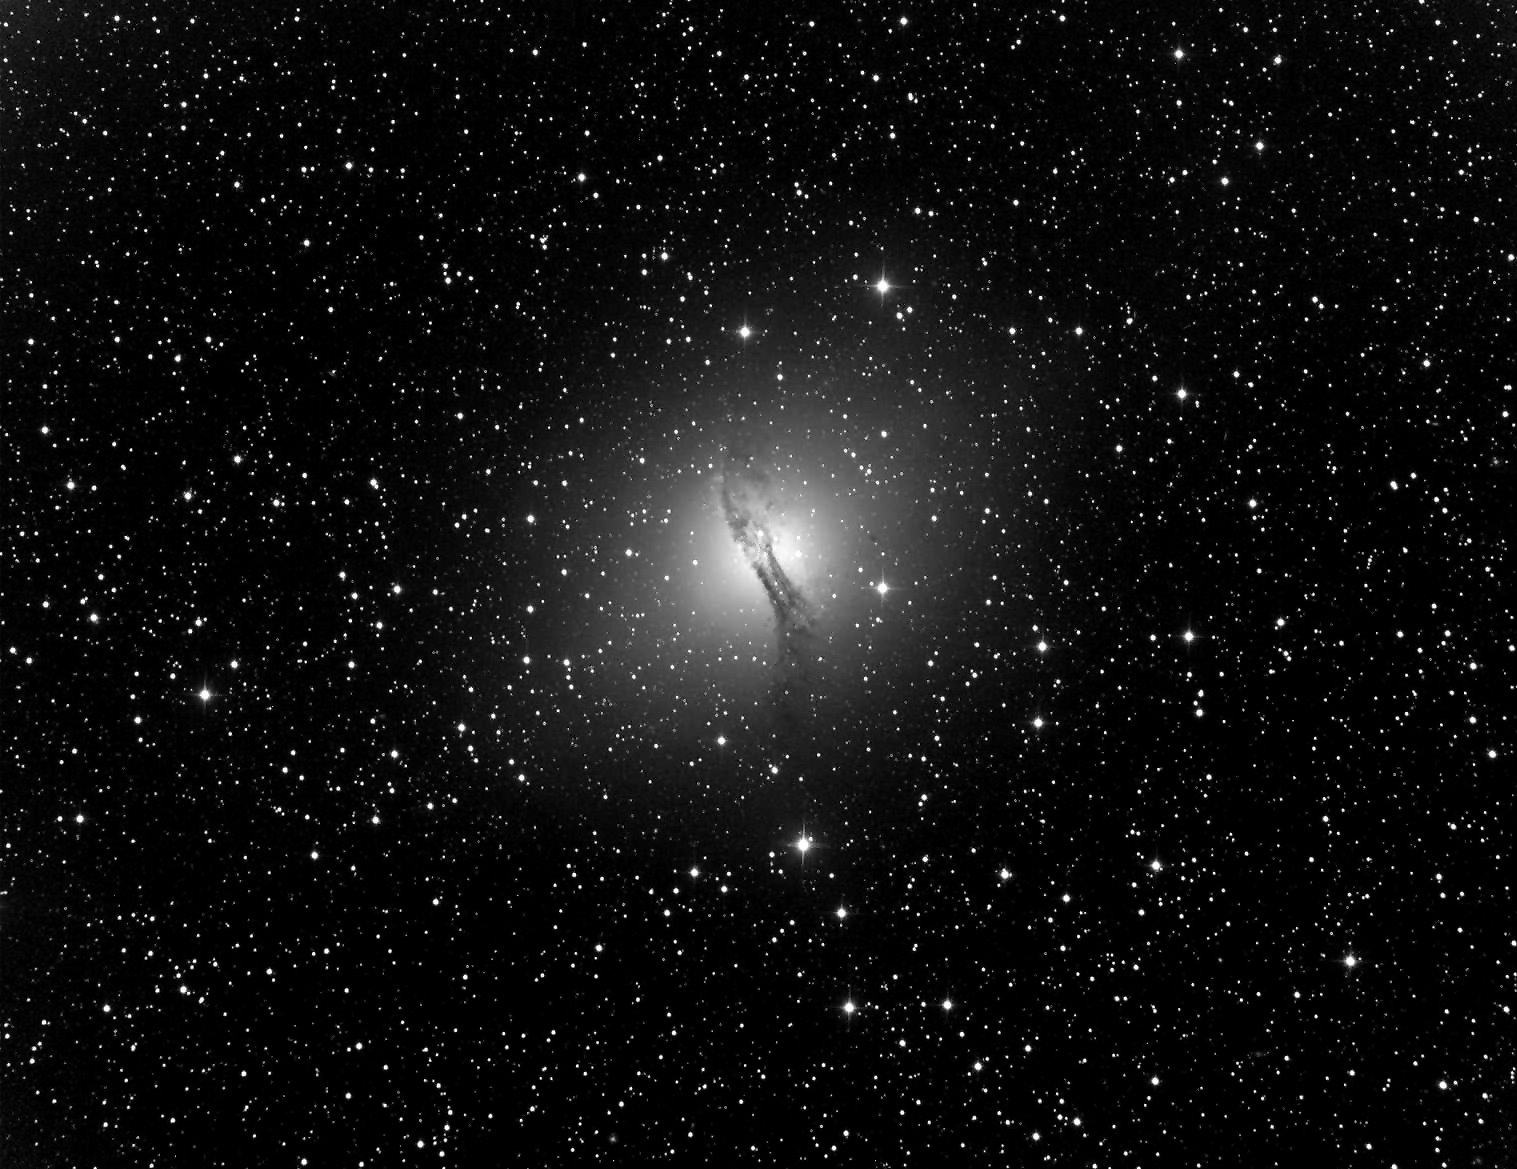 Galaxie Centaurus A (NGC5128) aufgenommen via iTelescope in Siding Spring mit Spiegelteleskop 510 mm / Brennweite 2259 mm / Belichtungszeit: 300 sec. / Entfernung: ca. 20 MLj.